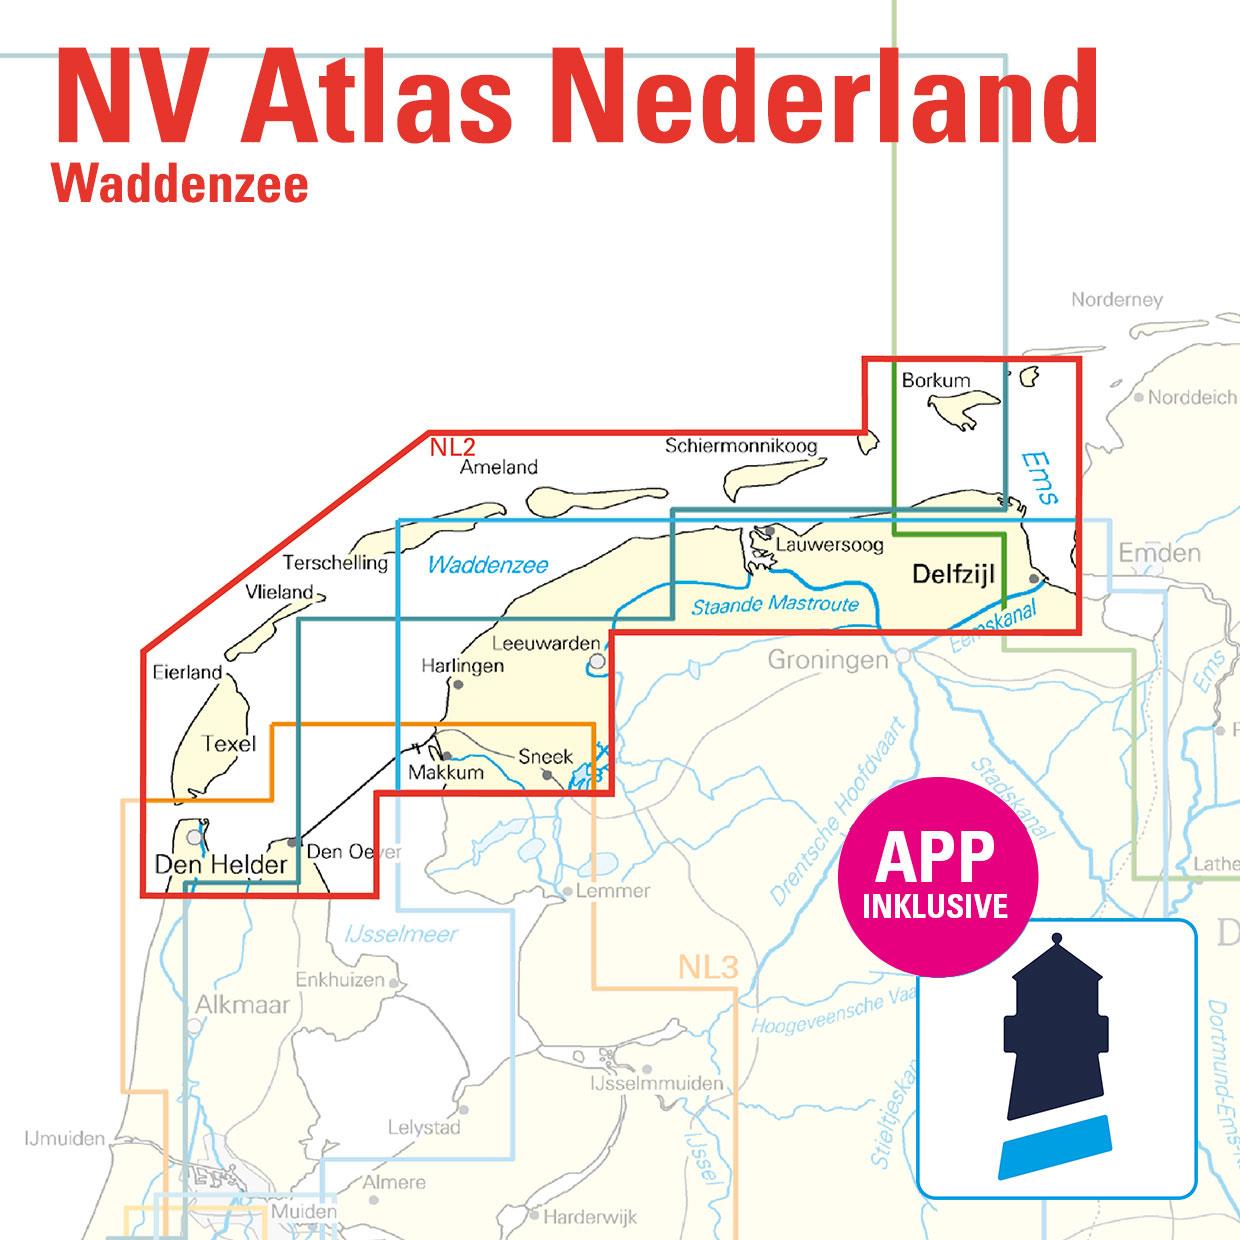 NV Charts Nederland NL2 - Waddenzee